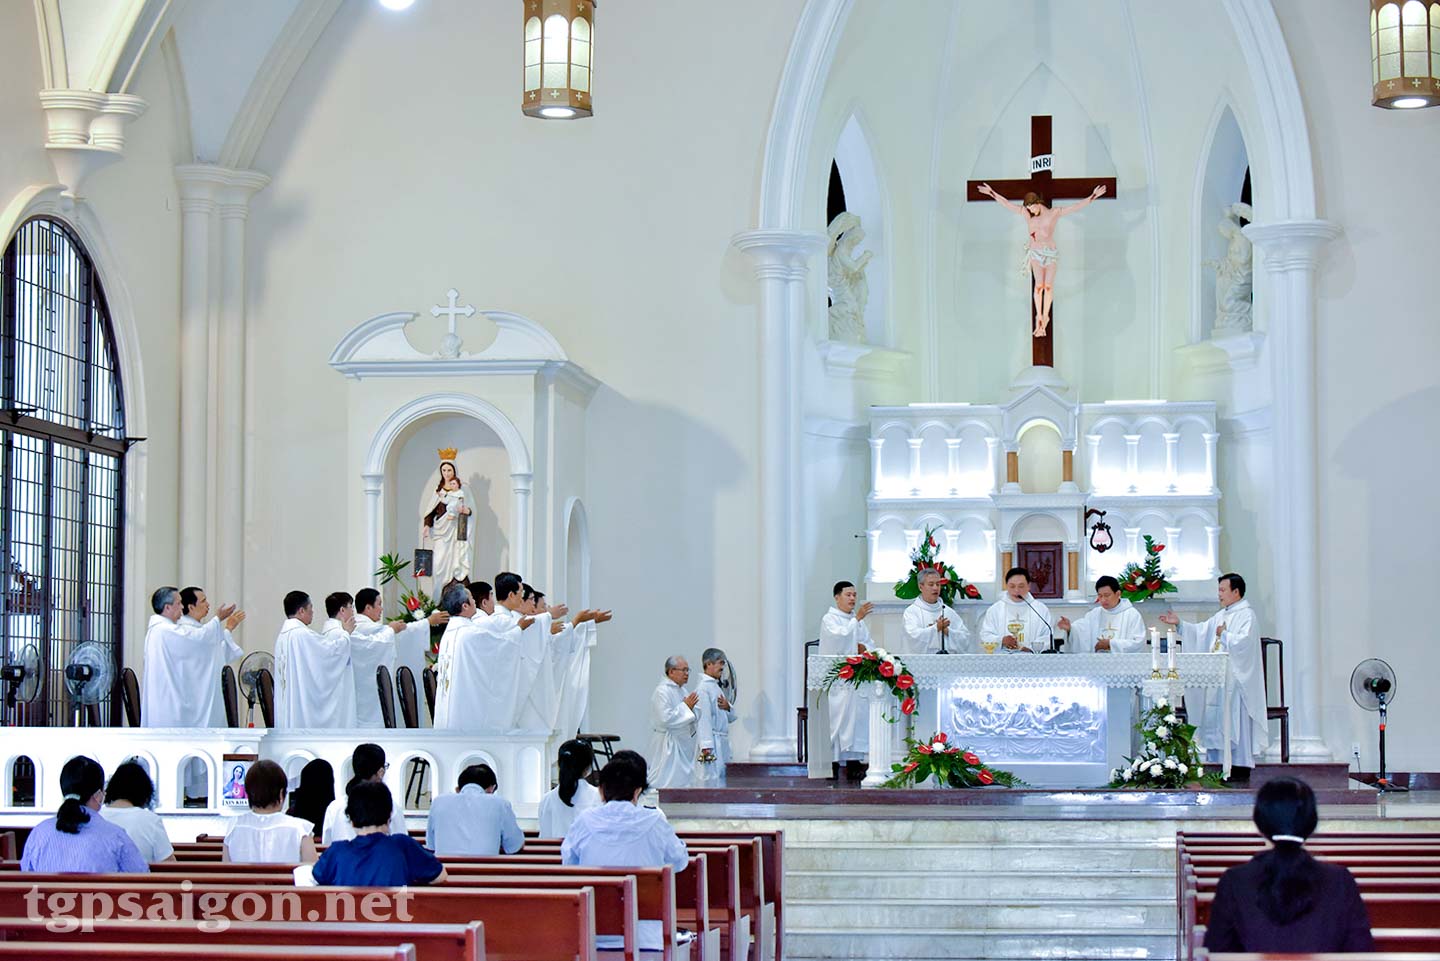 Quý linh mục khóa 9 dâng thánh lễ Tạ ơn tại Dòng Cát Minh Sài Gòn 28-6-2022